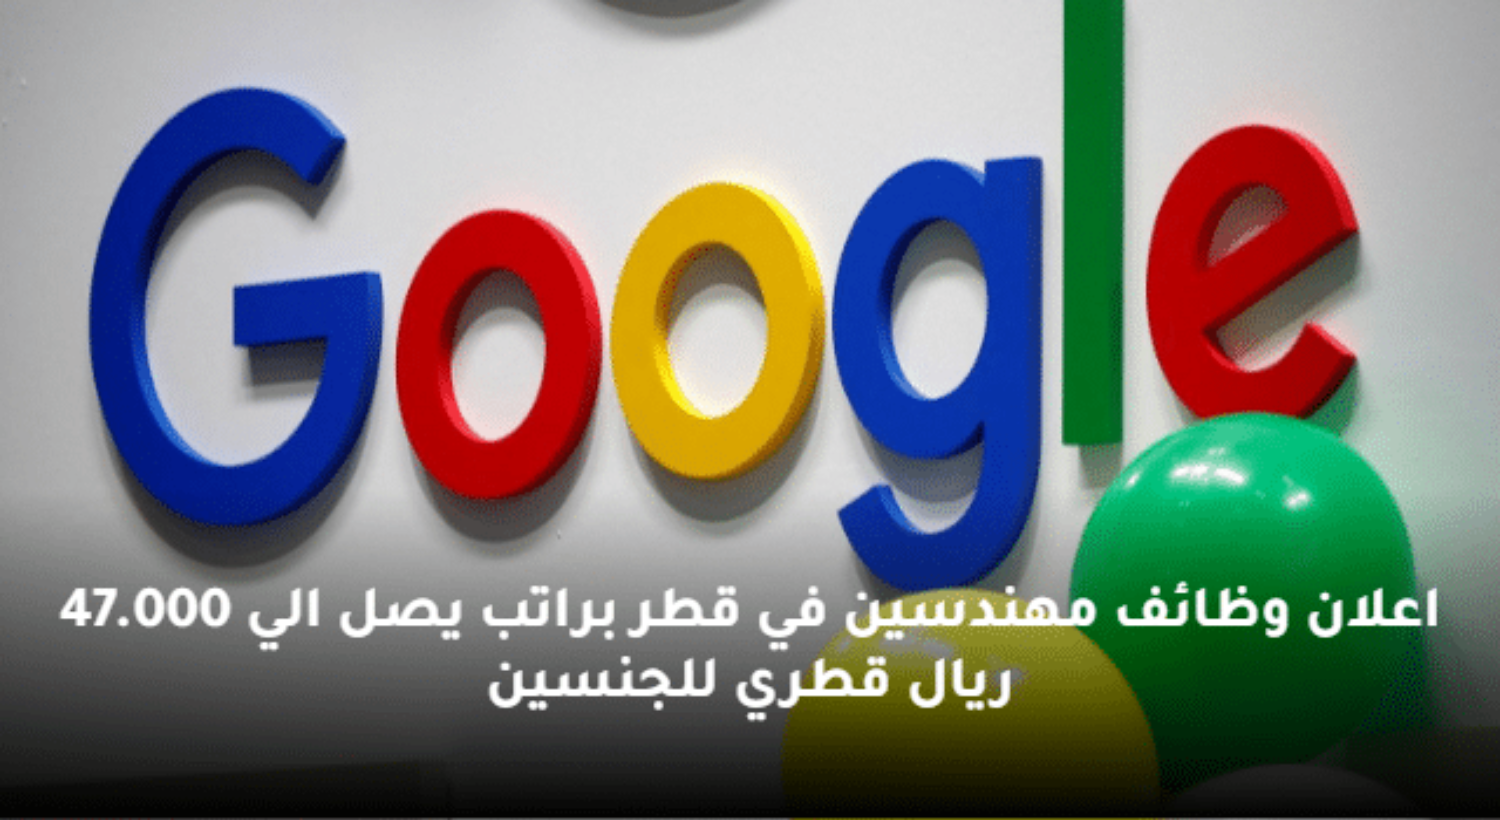 براتب يصل إلى 47,000 ريال .. إلحق التقديم لوظائف شركة جوجل في قطر بميزات خيالية ولجميع العرب (طريقة التقديم)